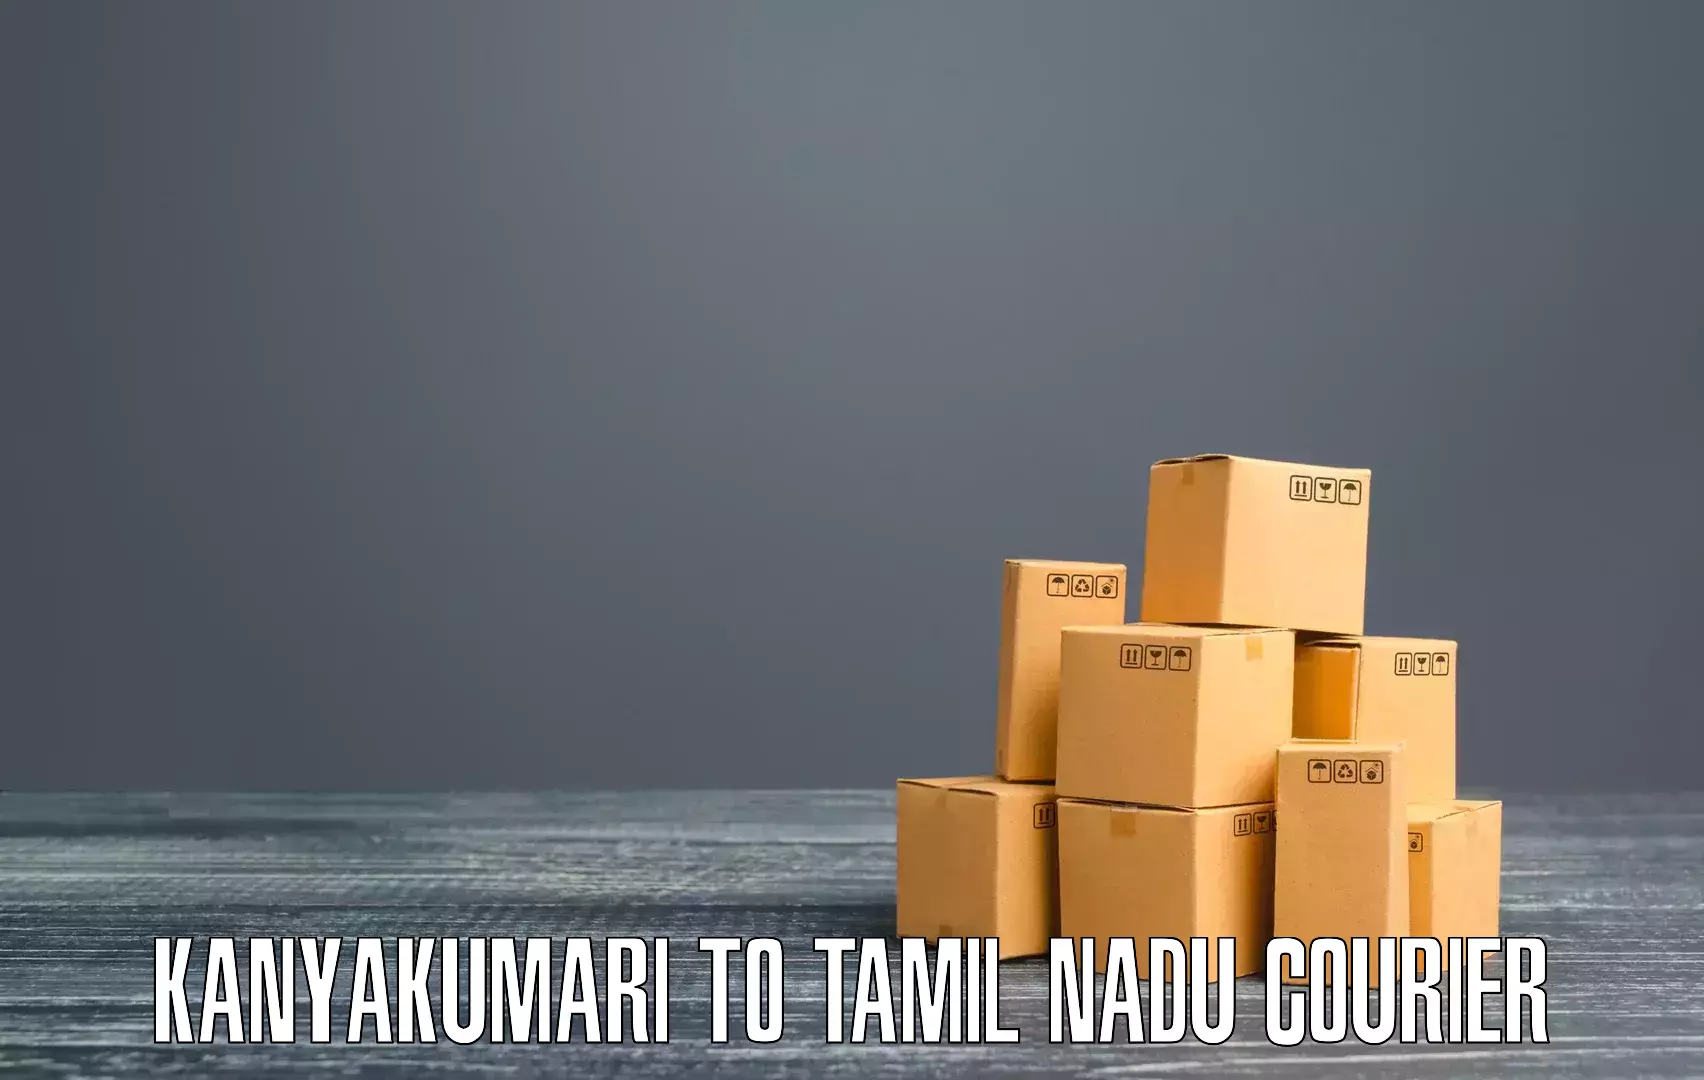 International courier networks Kanyakumari to Tiruvannamalai